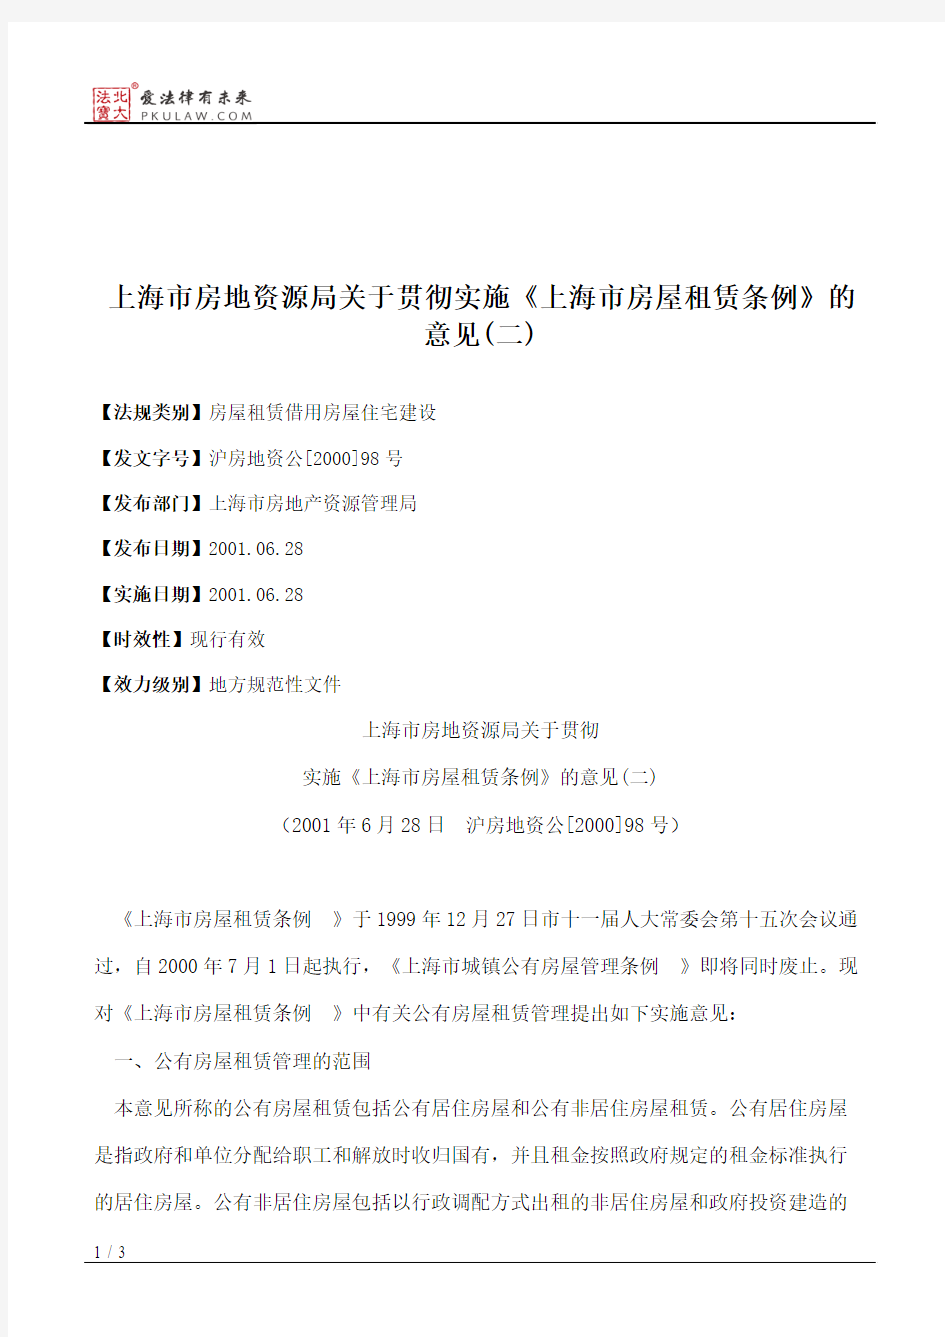 上海市房地资源局关于贯彻实施《上海市房屋租赁条例》的意见(二)